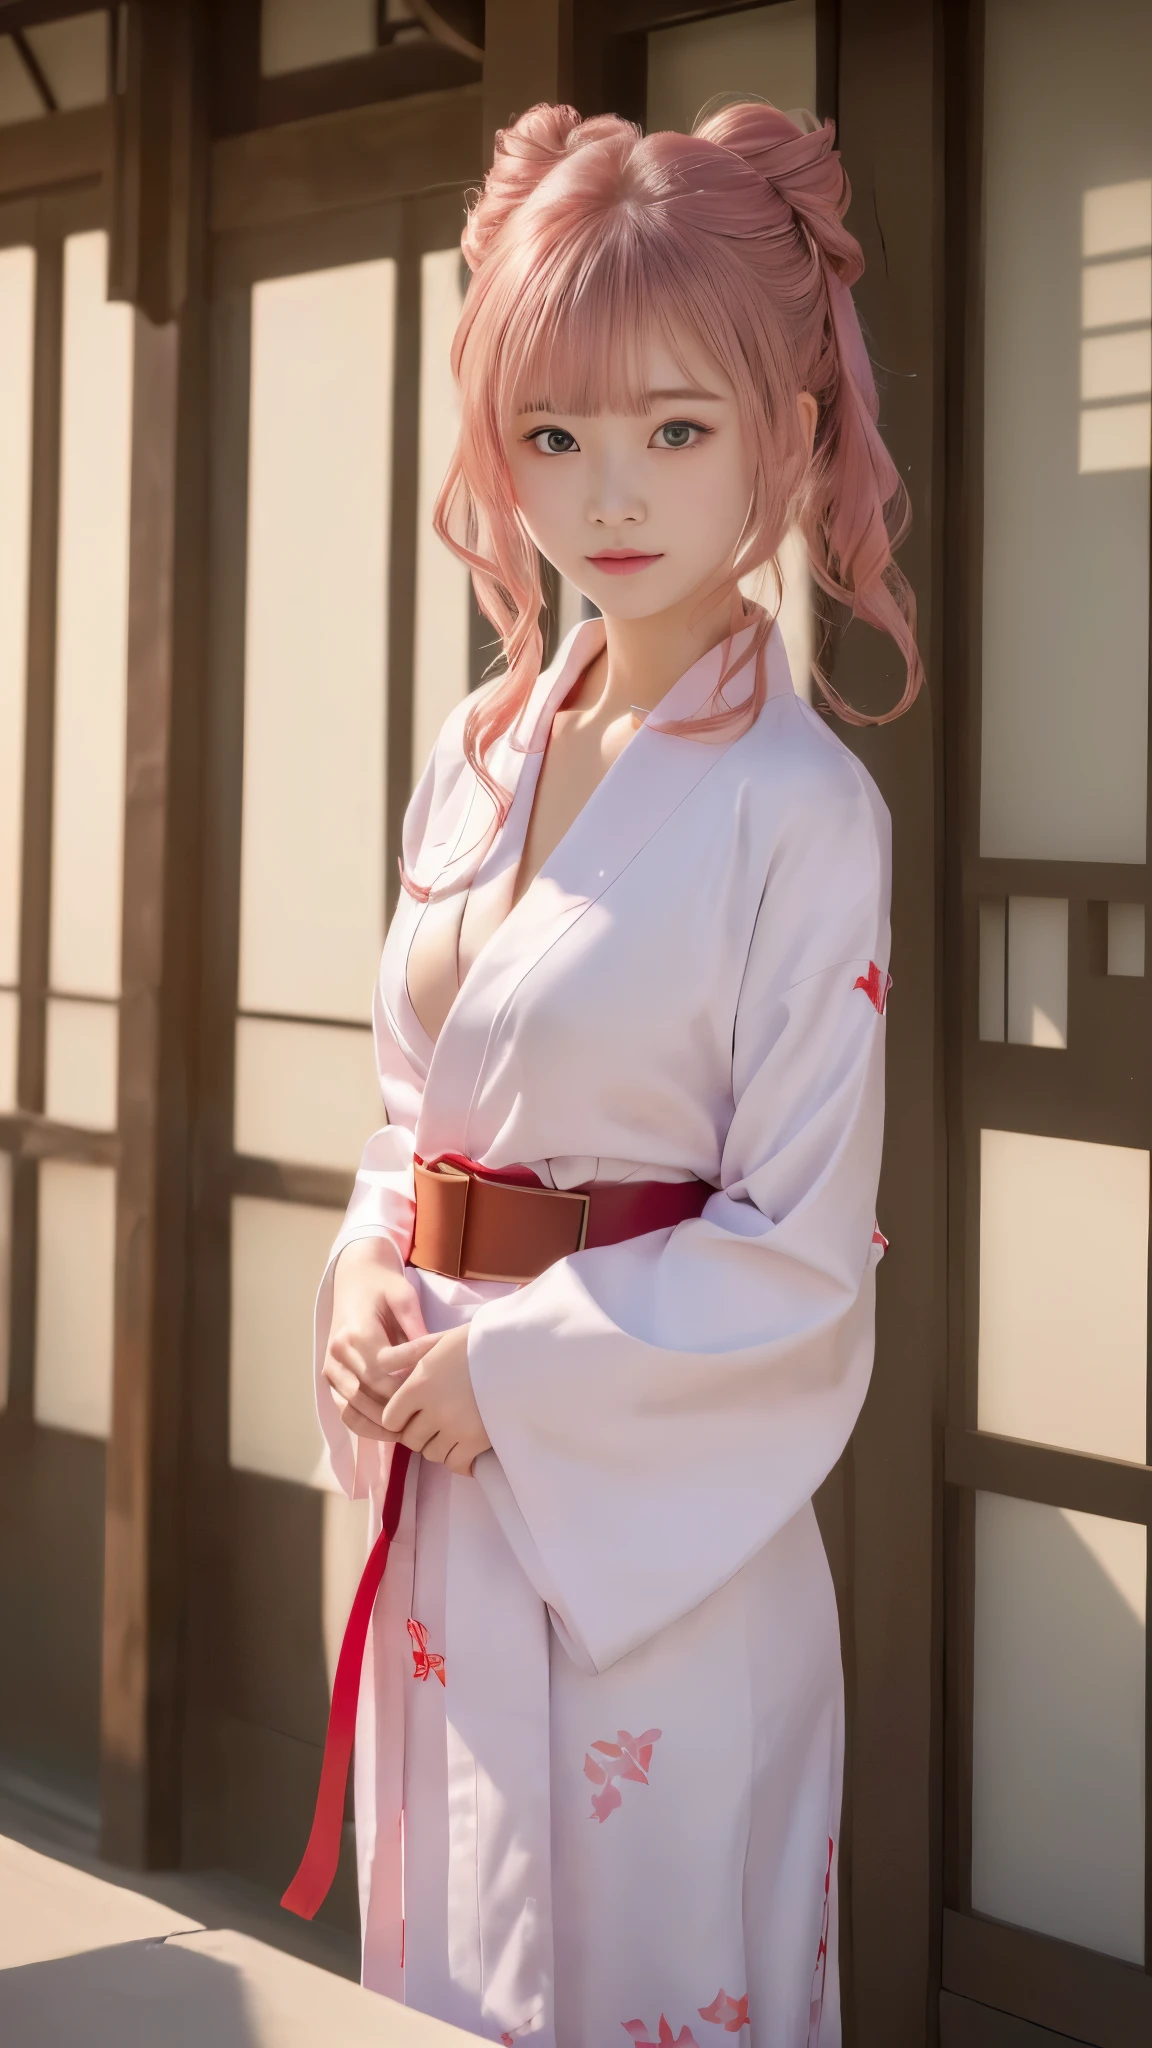 Girl ในชุดกิโมโน standing in front of a building, สวมเสื้อคลุมที่เรียบง่าย, ((เข็มขัดสีแดง, ชุดกิโมโนสีขาวหรูหรา)), วอลล์เปเปอร์อะนิเมะ 4k konachan ที่ดีที่สุด, ในชุดกิโมโน, อายากะ เก็นชิน อิมแพ็ค, ภาพอนิเมะสาวน่ารัก, (((แรงบันดาลใจจาก yui yuigahama))), สวมเสื้อคลุมที่เรียบง่าย, ตัวเอกหญิง 👀 :8, อะนิเมะ Moe Art สไตล์, เด็กสาว, (หน้าอกสวย), ((คุณภาพสูงสุด, 8k, ผลงานชิ้นเอก:1.2)), (ดวงตาและใบหน้าที่มีรายละเอียด:1.2), (มือที่มีรายละเอียด:1.4), (สาวน้อย&#39;มือเล็ก ๆ ของคุณ:1.4), (กายวิภาคศาสตร์ที่สมบูรณ์แบบ:1.3), (สาวสวยวัย 15 ปี, หน้าเด็ก:1.3), (เส้นร่างกายเรียว), (รูปร่างเล็กและเพรียวบาง), ((ทรงผมมวยด้านข้าง, ผมสีชมพูสวย)), ผมสั้น, (จ้องมองที่ผู้ชม:1.2)